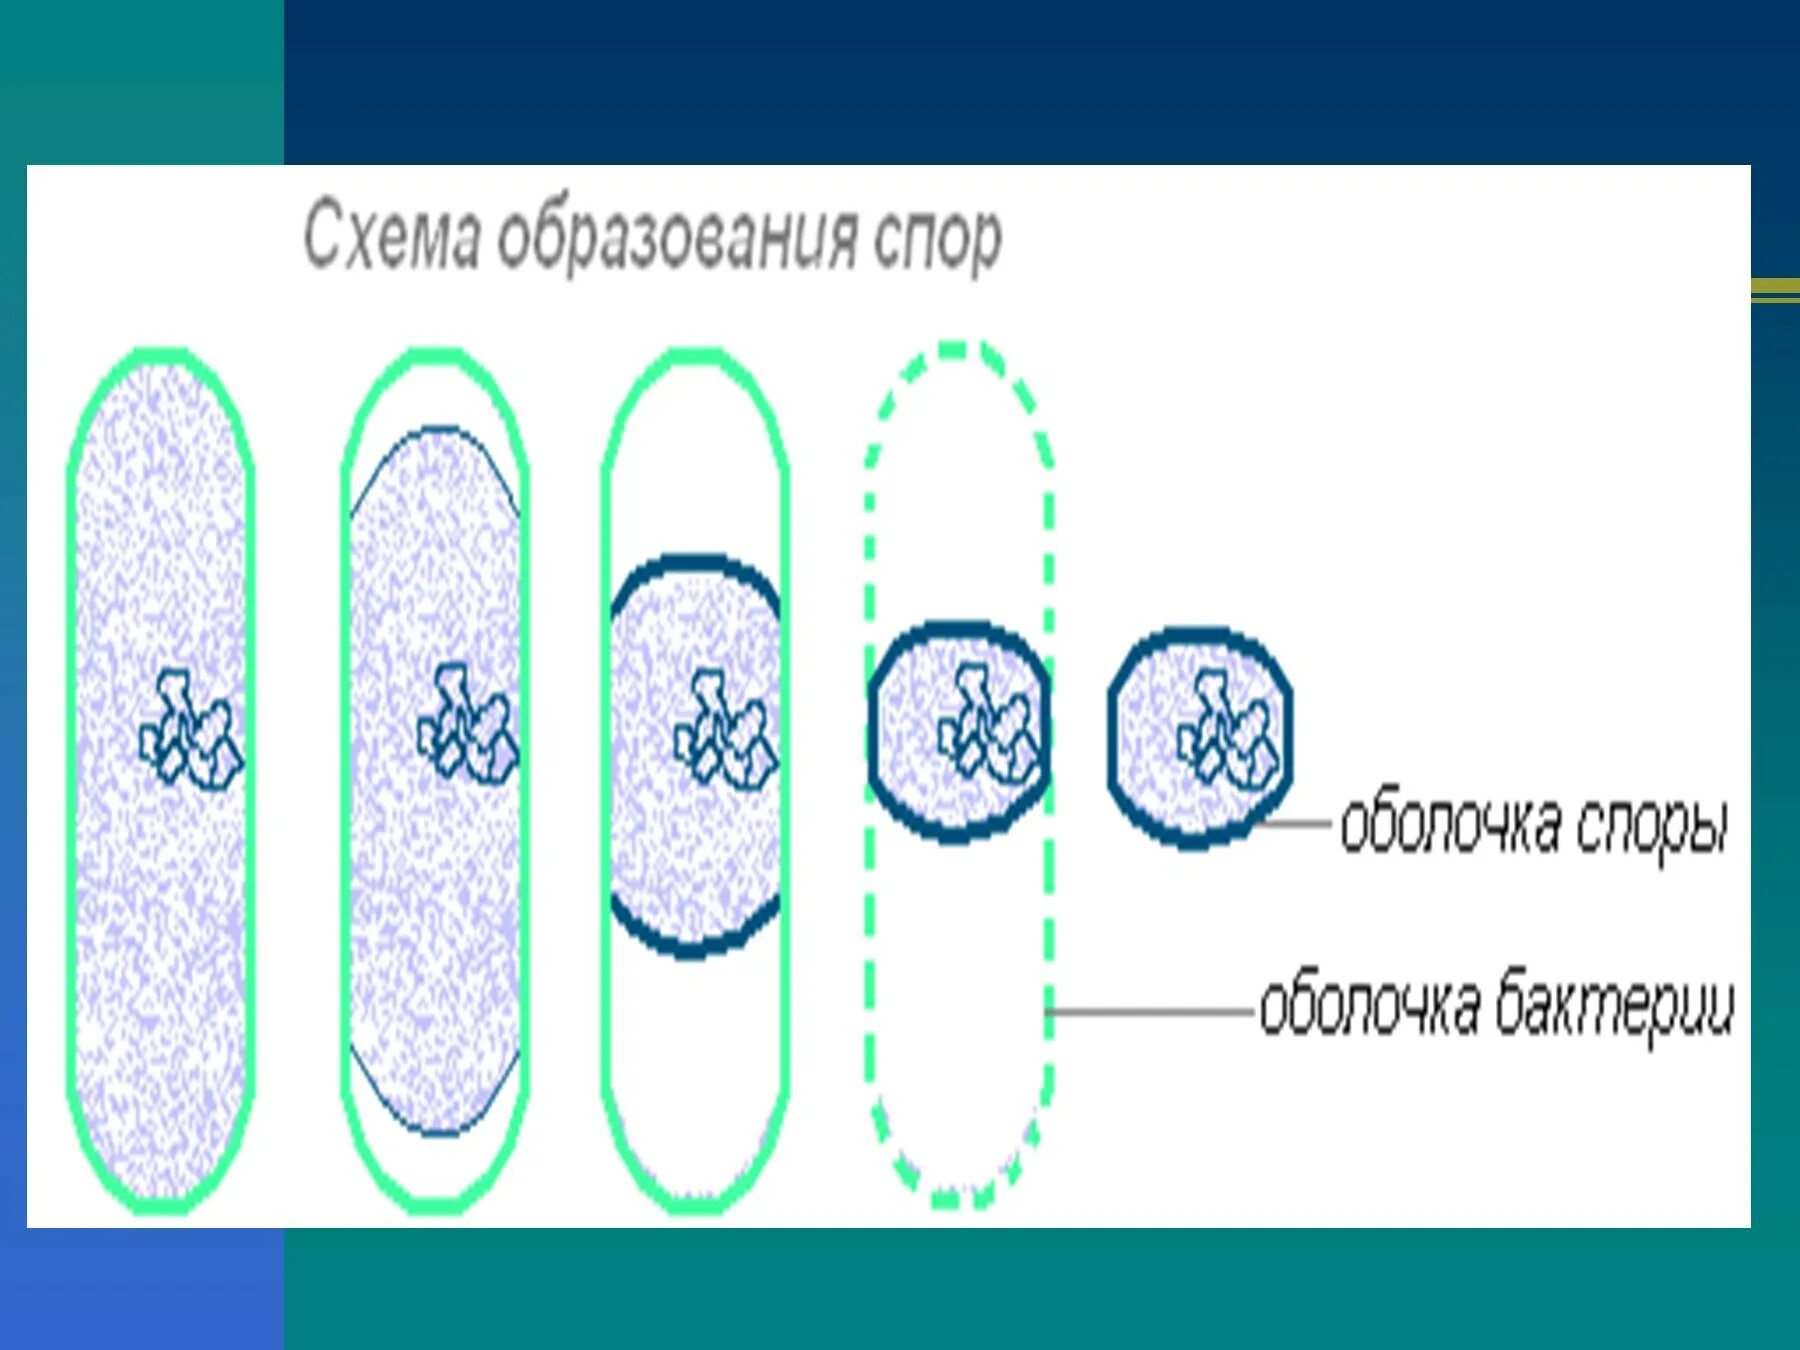 Схема образования спор у бактерий. Спорообразование бактериальной клетки. Схема спорообразования у бактерий. Споры и спорообразование у бактерий.